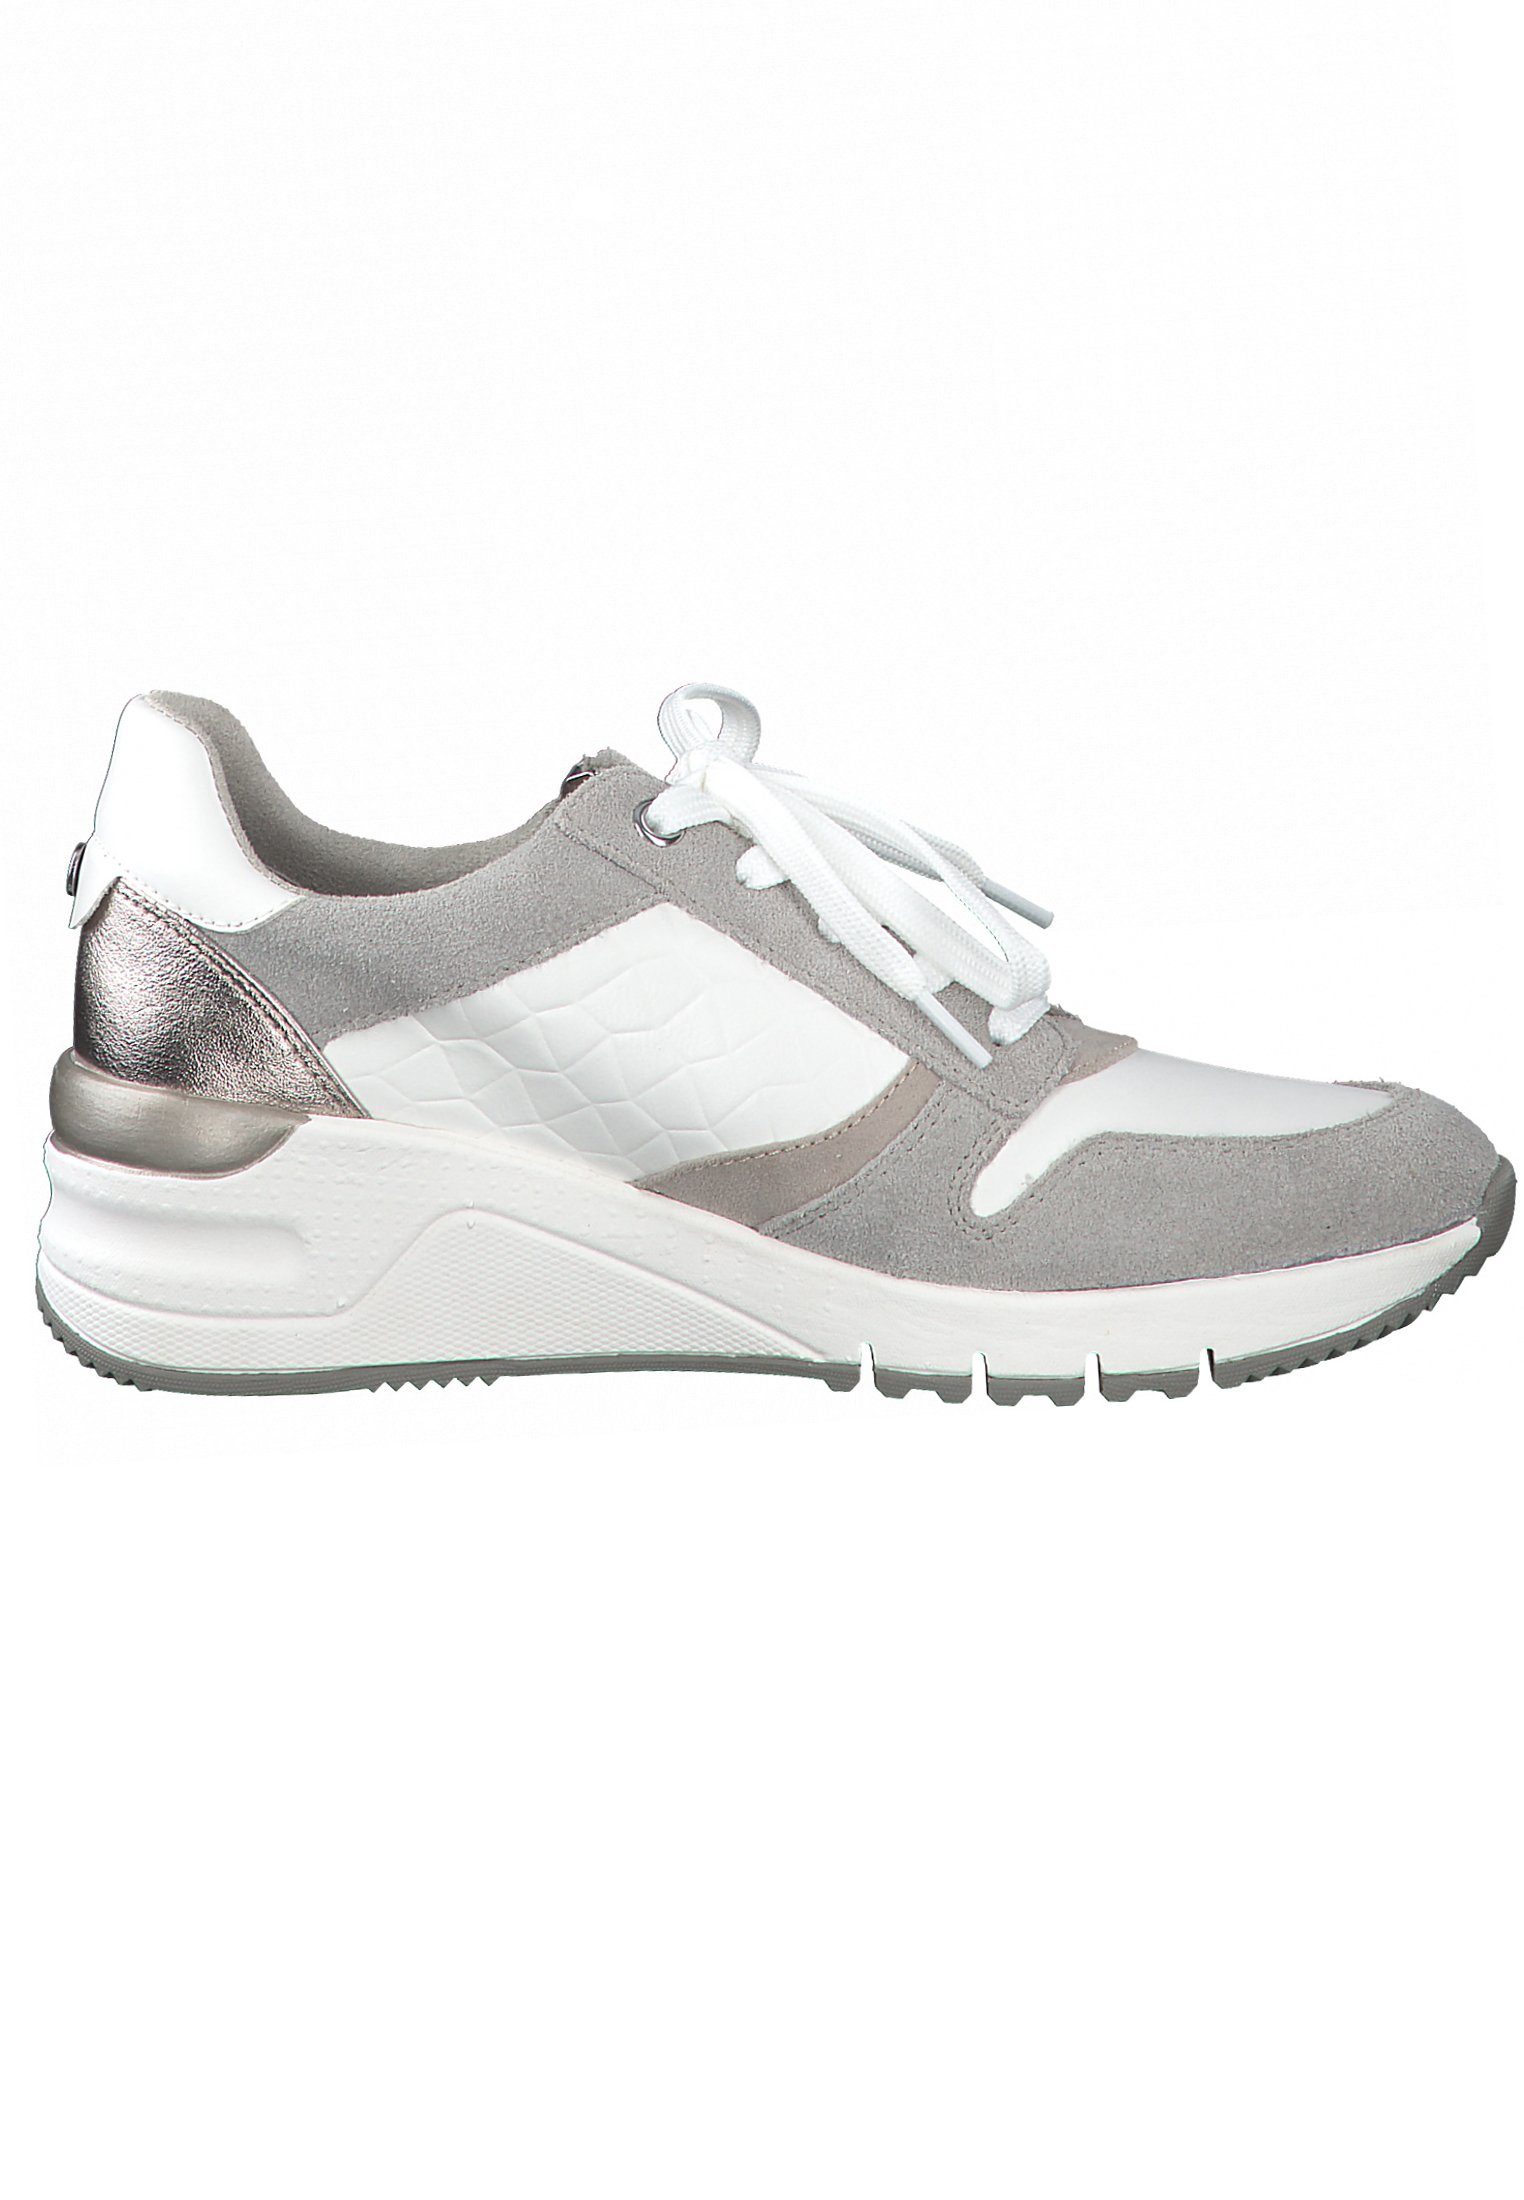 197 Tamaris Sneaker WHITE COMB (21201930) White 1-23702-26 Comb